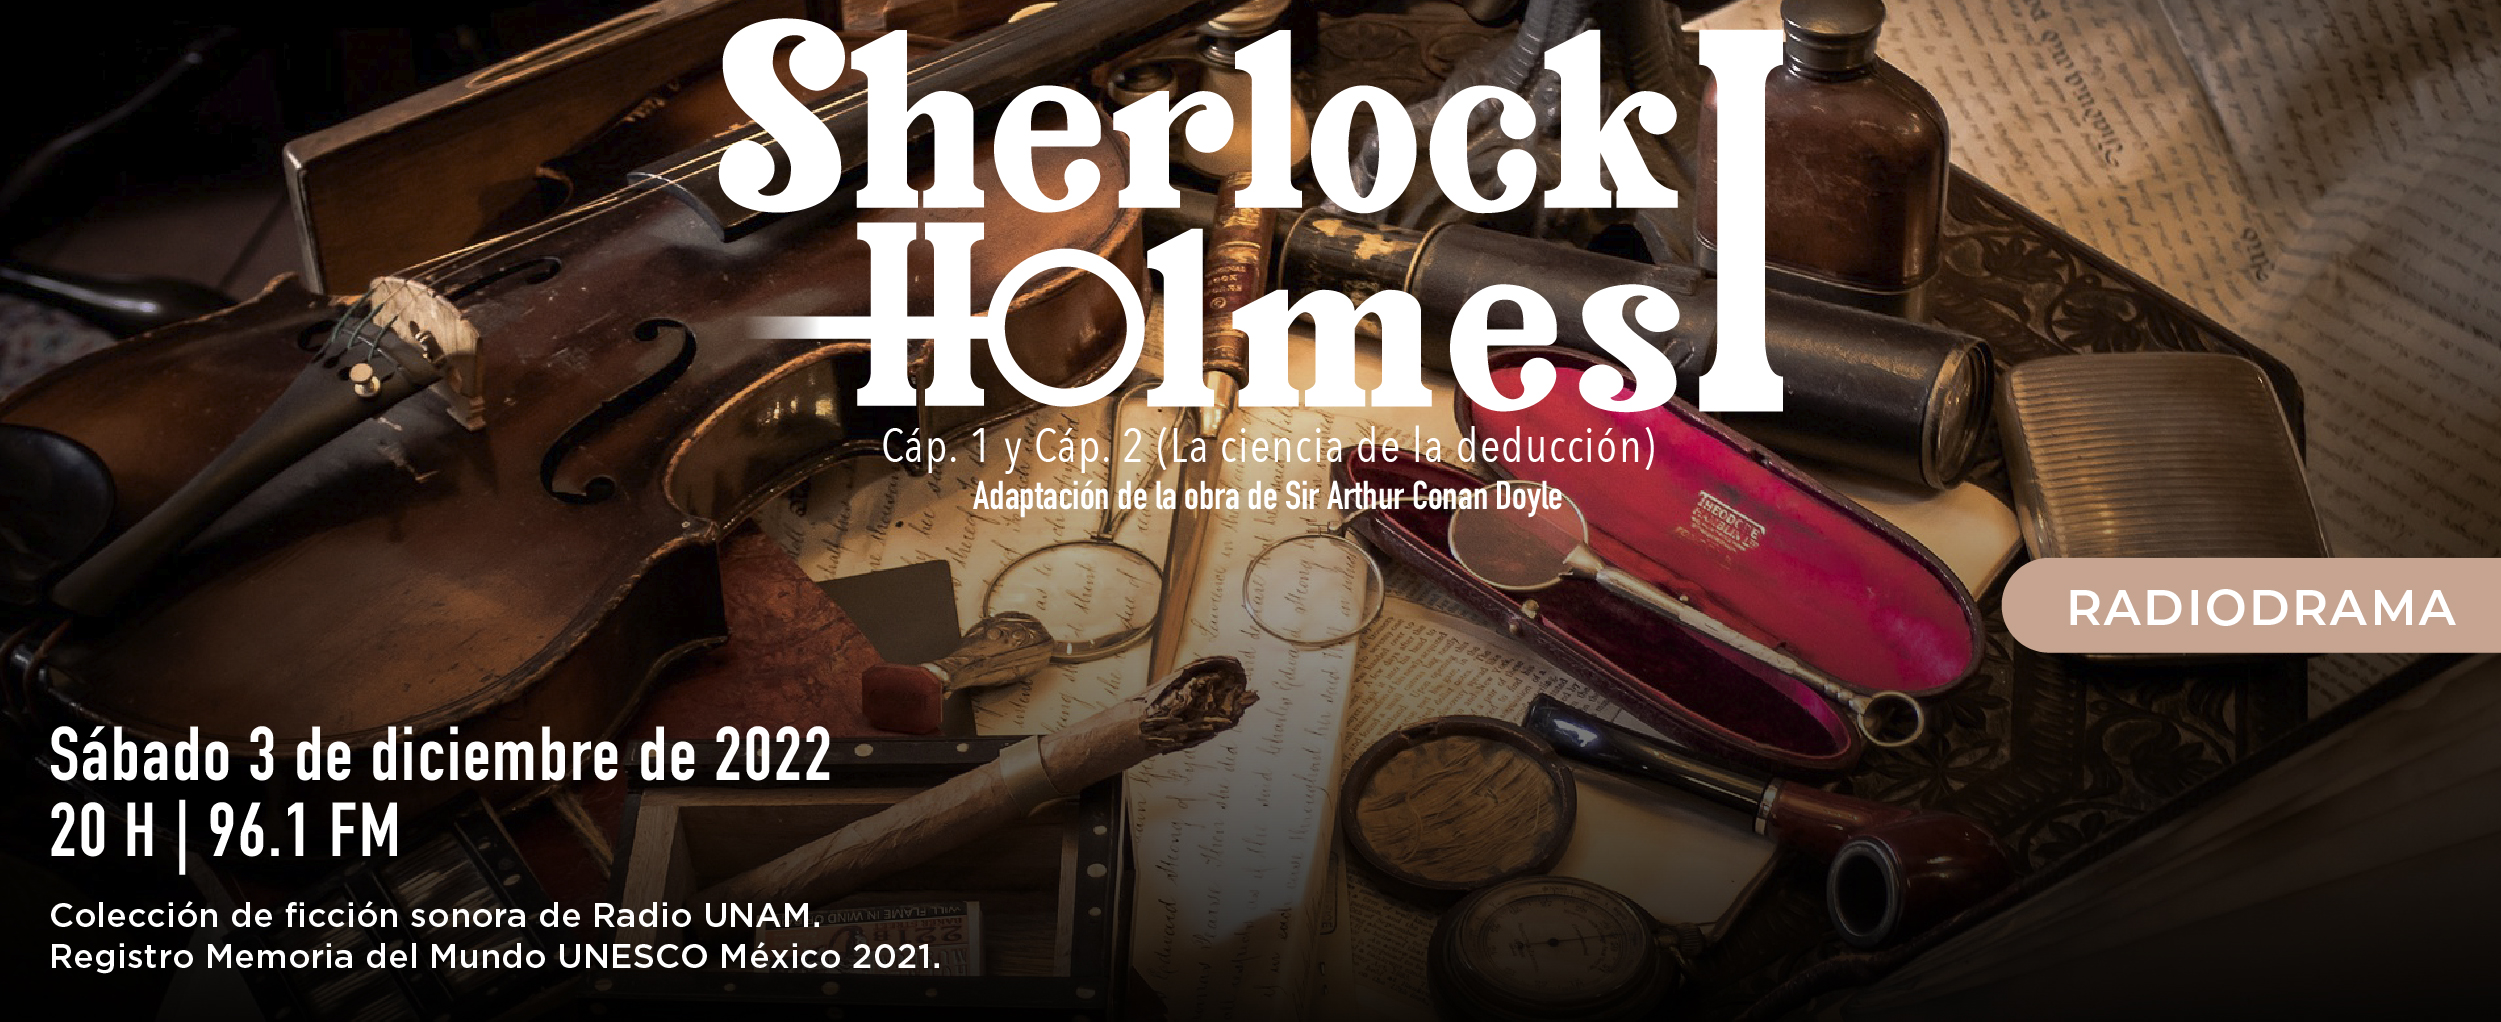 Sherlock Holmes capítulo 1 y 2